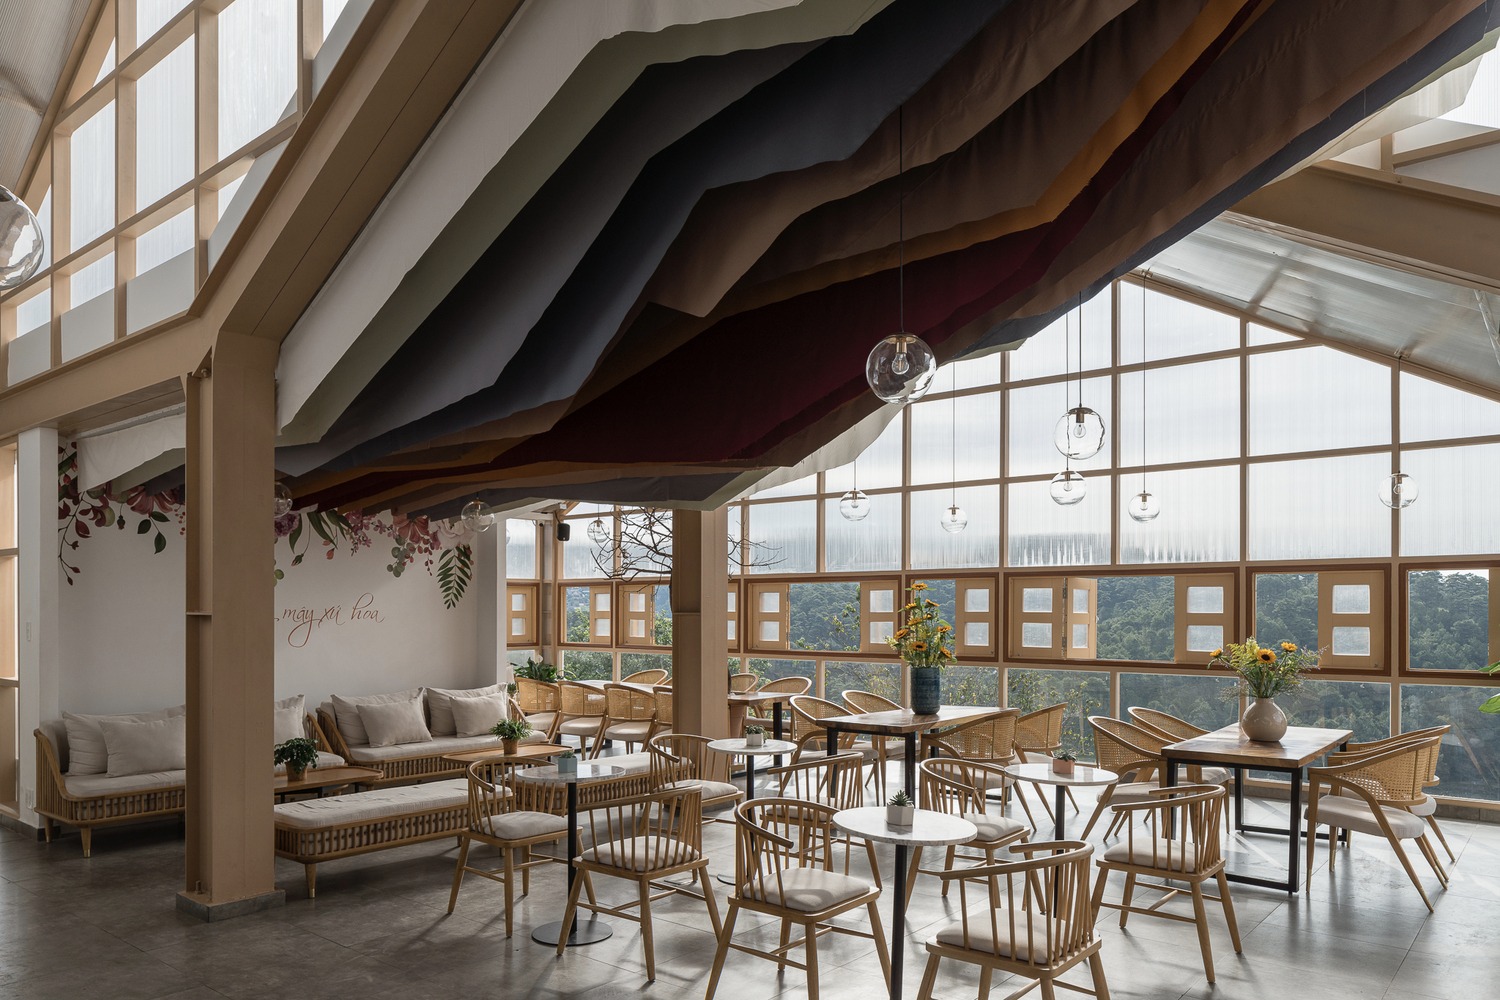 không gian bên trong quán cà phê với cấu trúc mái uốn lượn độc đáo